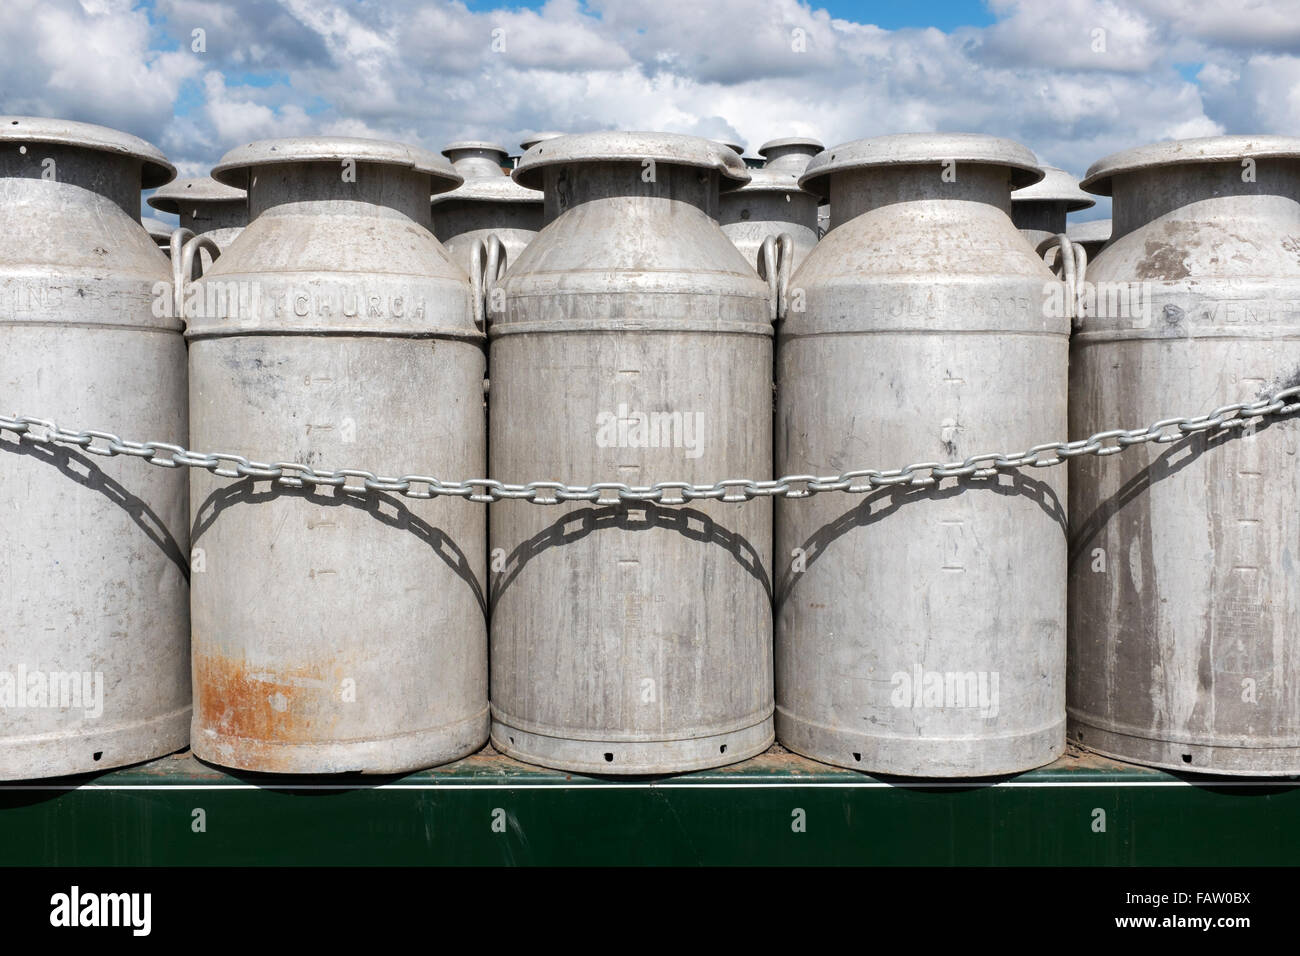 Eine Reihe von zehn Gallonen Aluminium Milchkannen gestapelt auf der Rückseite eines LKW. Dorset, England, Vereinigtes Königreich Stockfoto